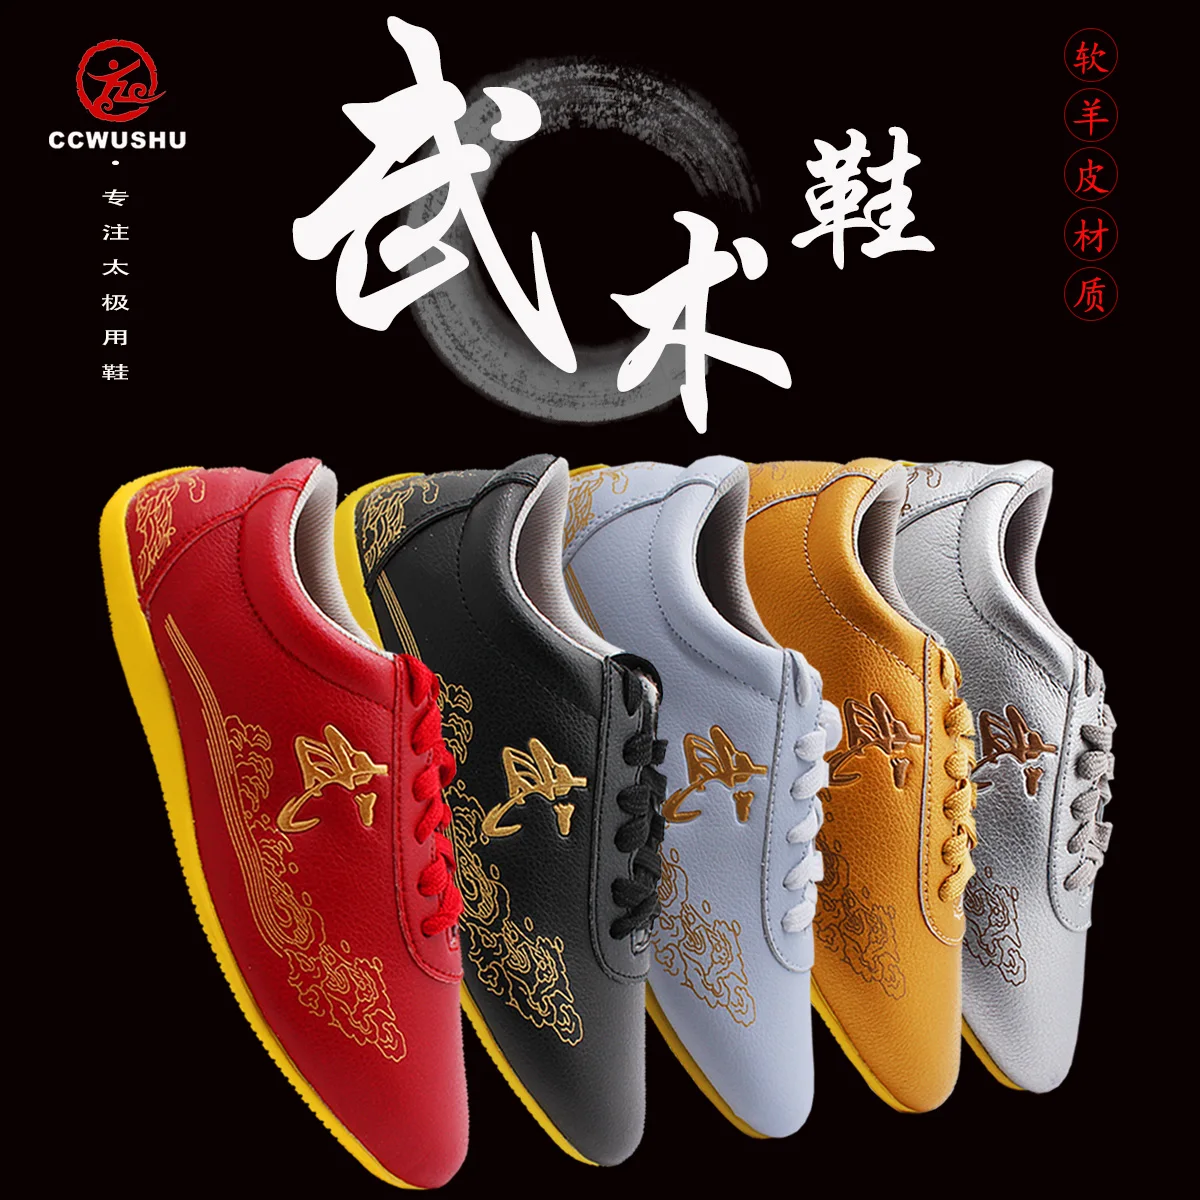 ccwushu shoes Martial Arts shoes taichi taiji changquan nanquan shoes kungfu supply chinese traditional kungfu shoes